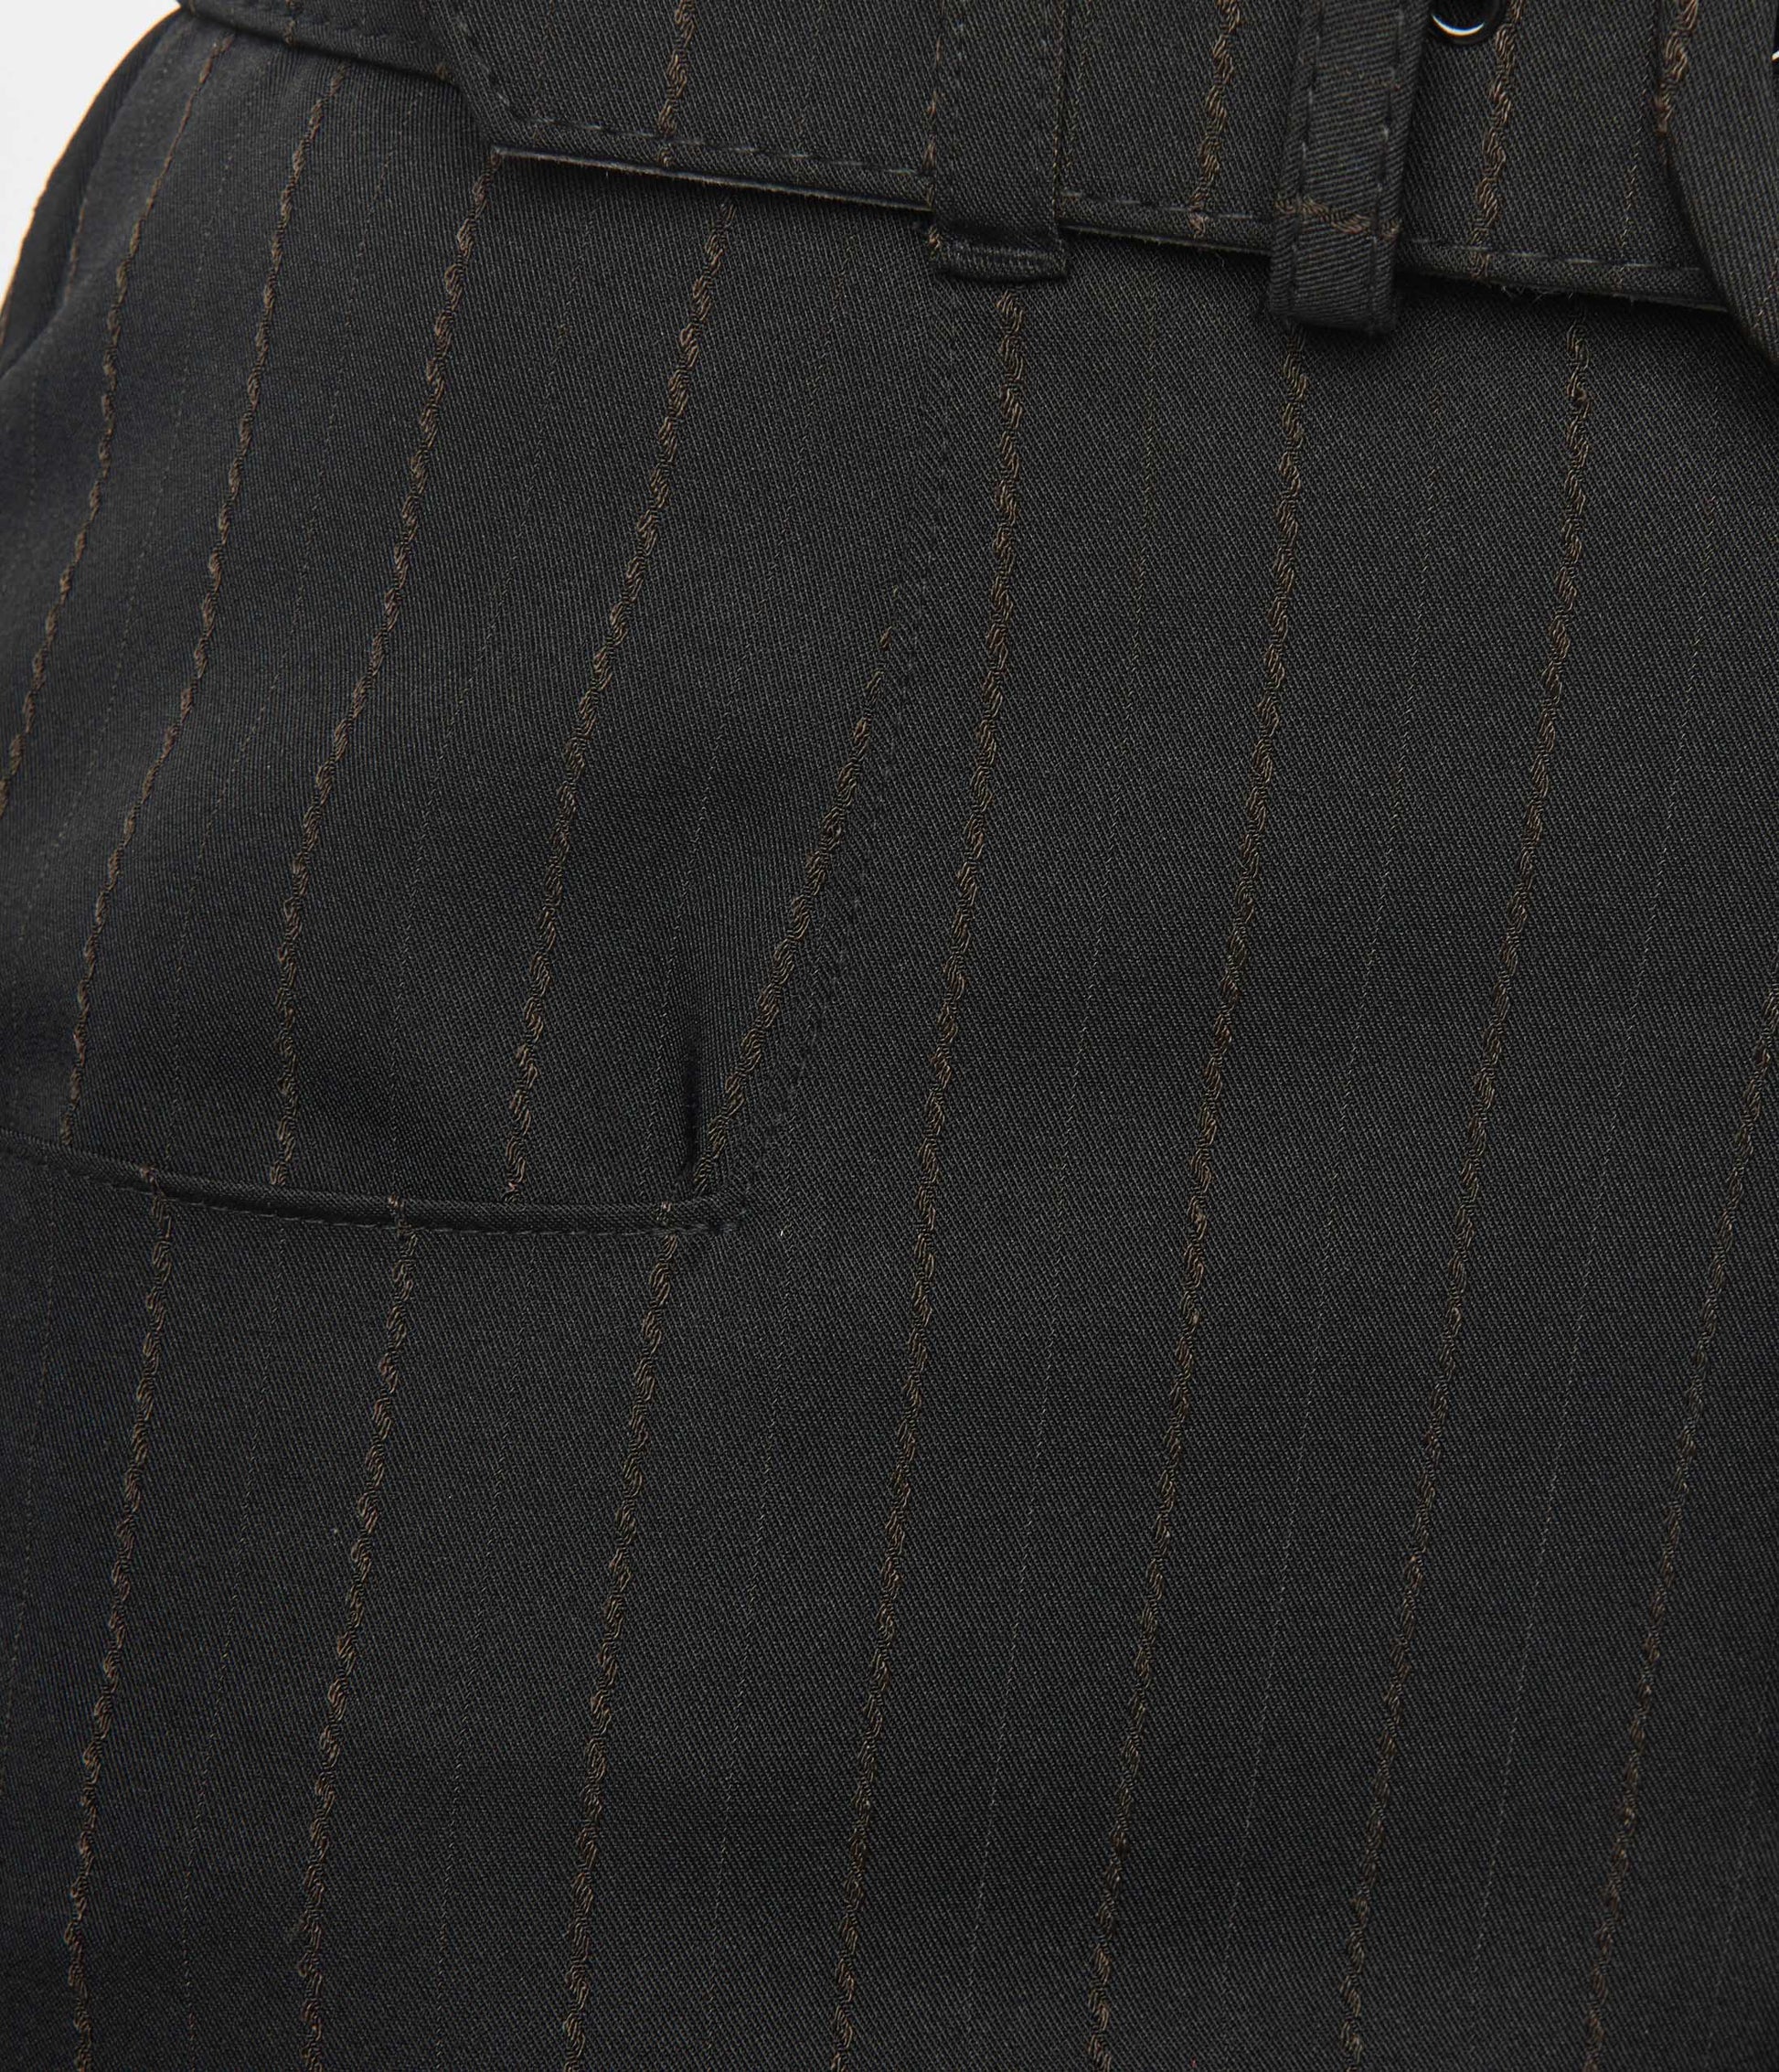 Unique Vintage Black Twill Stripe Ginger Capri Pants